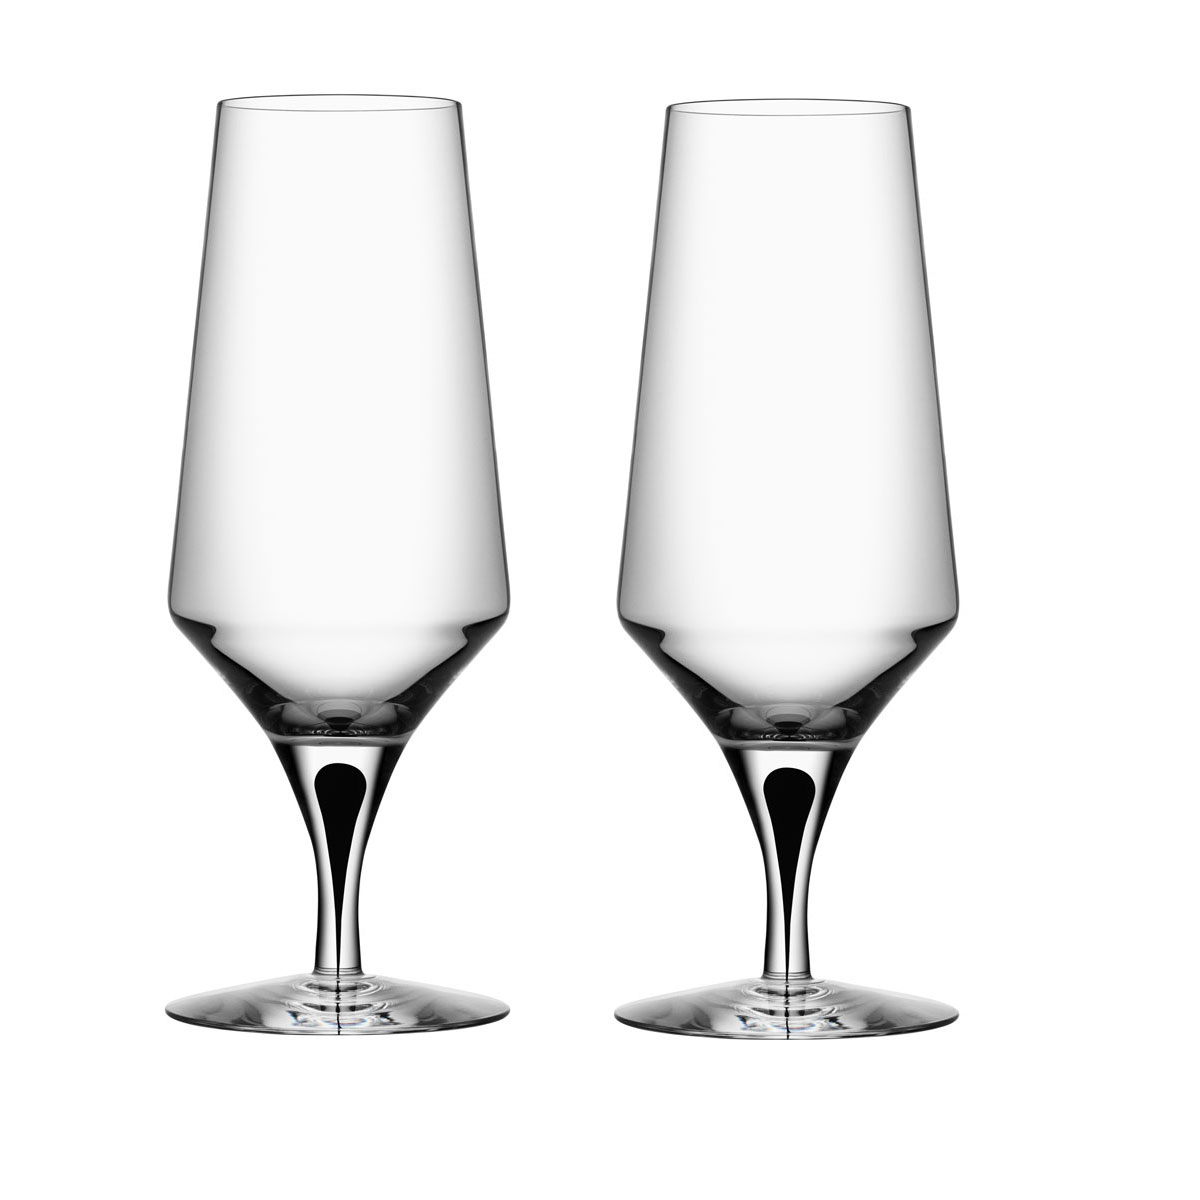 Orrefors Crystal, Metropol Black Beer Glasses, Pair